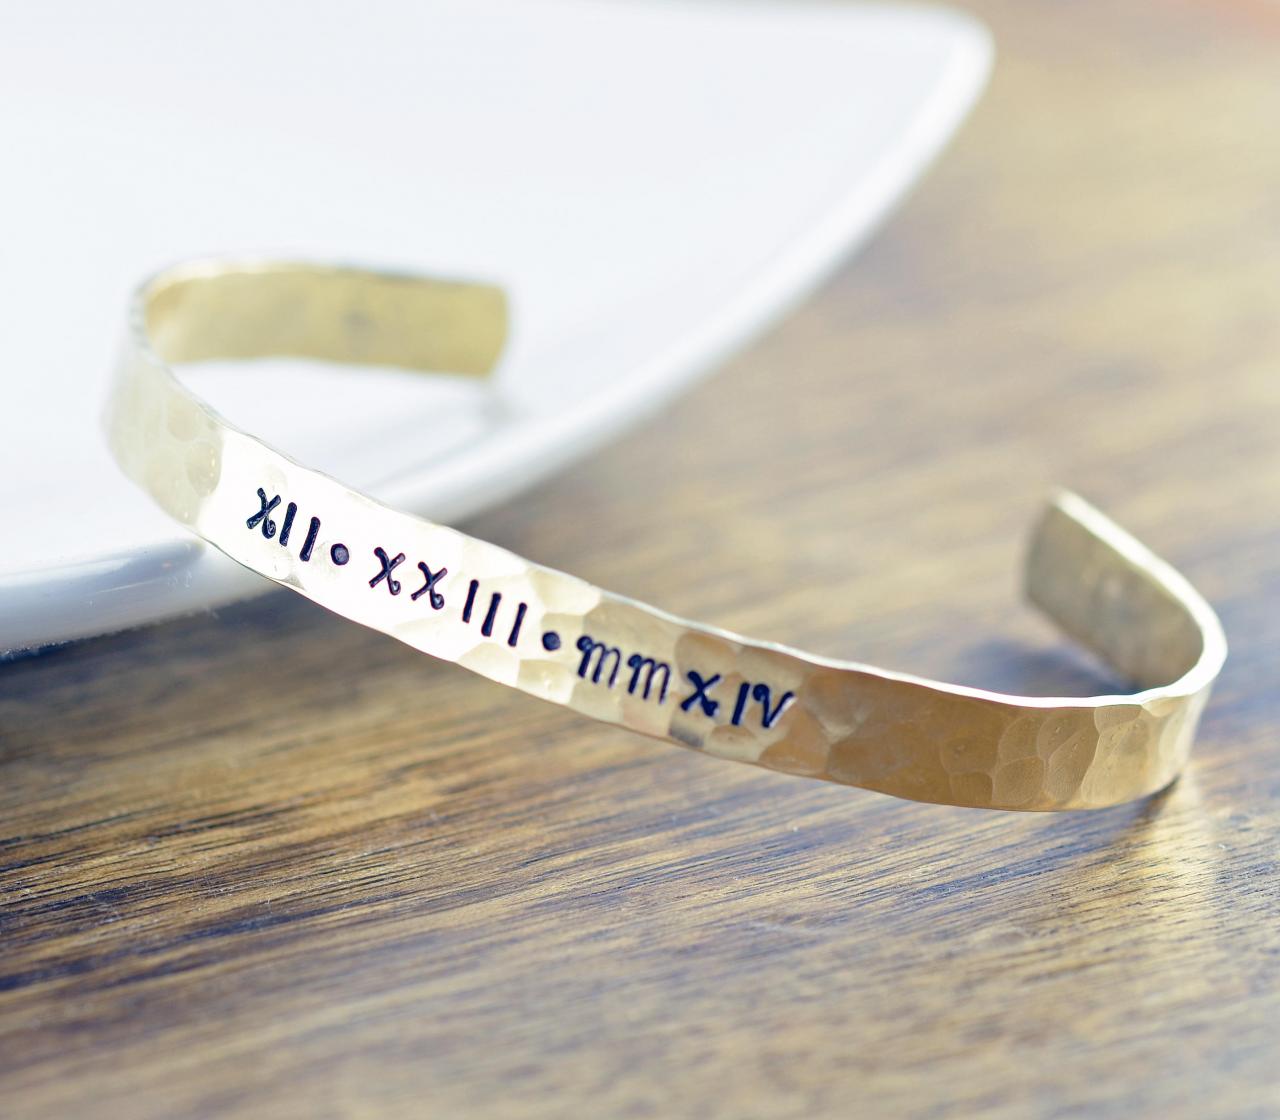 Custom Bracelet - Roman Numeral Bracelet - Gold Cuff Bracelet - Personalized Cuff - Personalized Jewelry, Christmas Gifts For Her